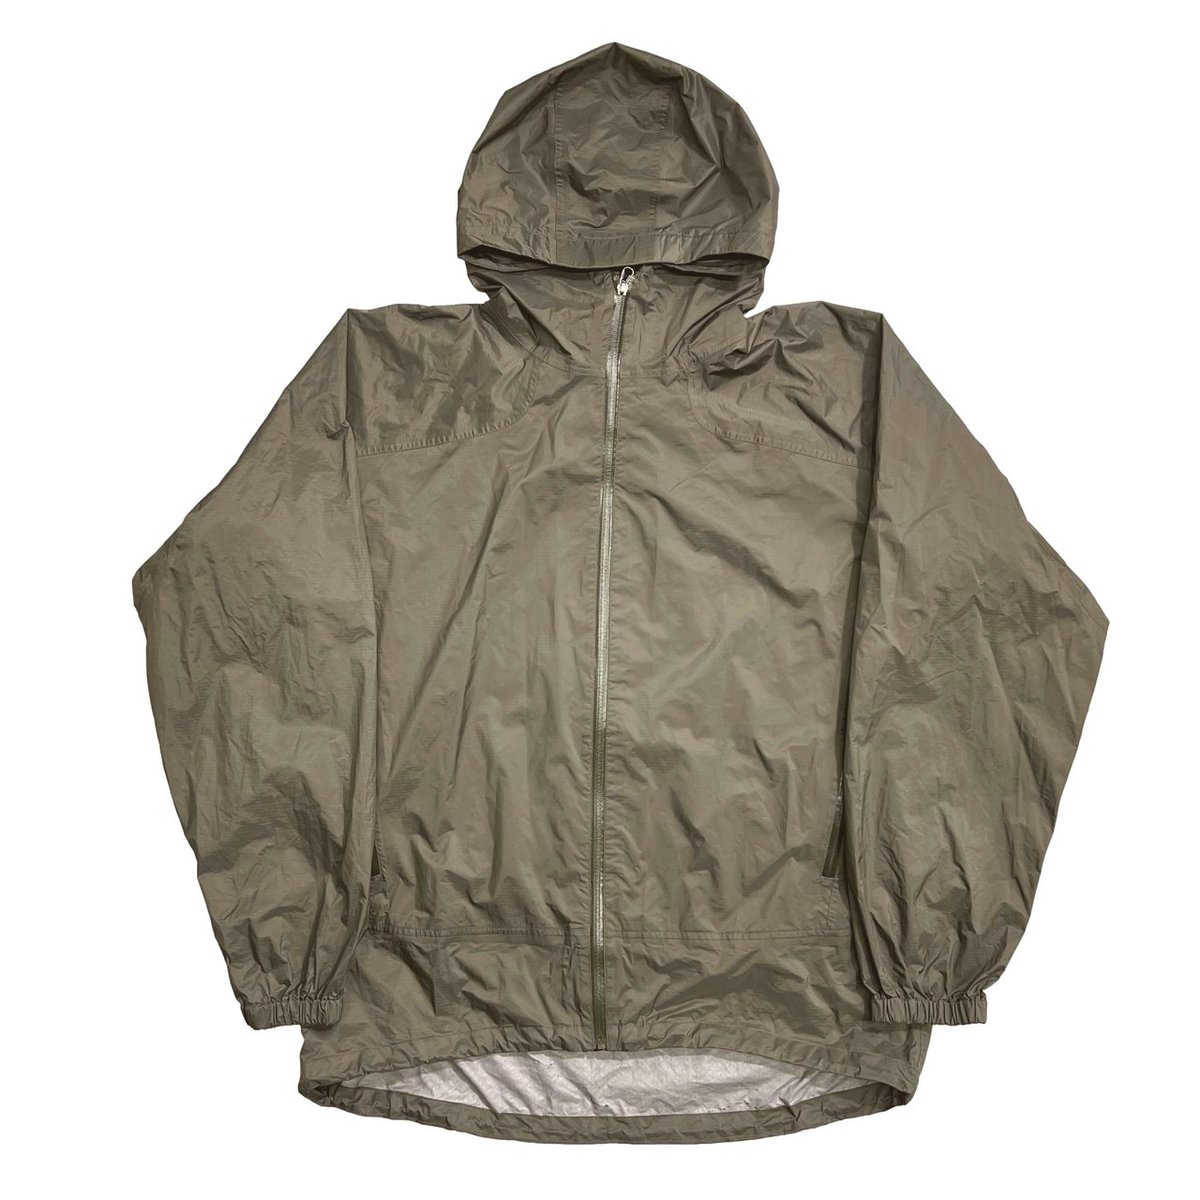 00's Patagonia MARS rain shadow jacket